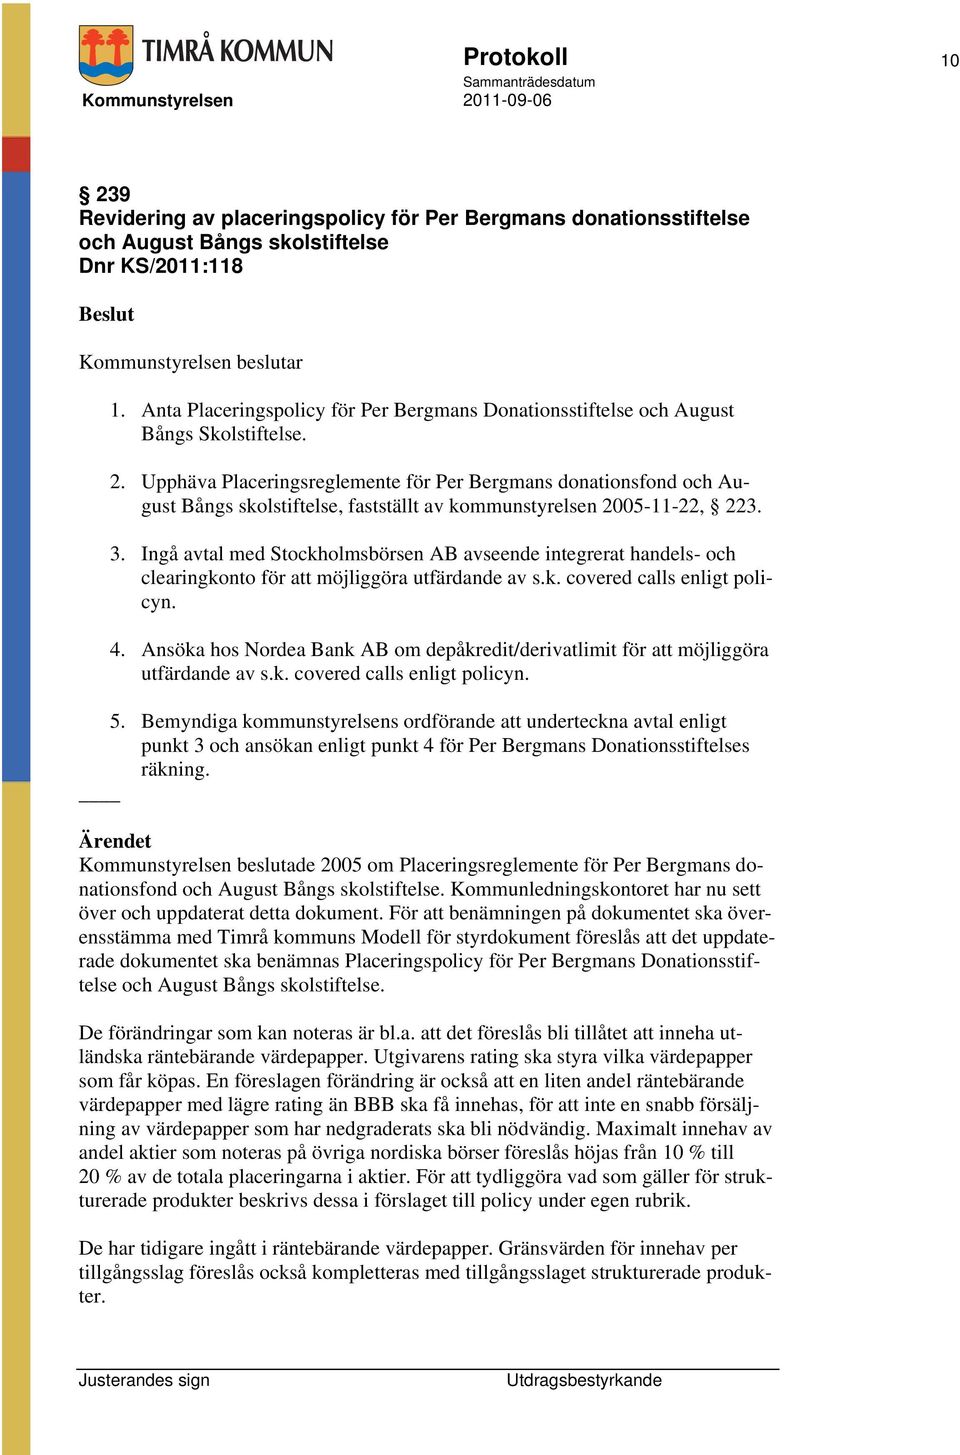 Upphäva Placeringsreglemente för Per Bergmans donationsfond och August Bångs skolstiftelse, fastställt av kommunstyrelsen 2005-11-22, 223. 3.